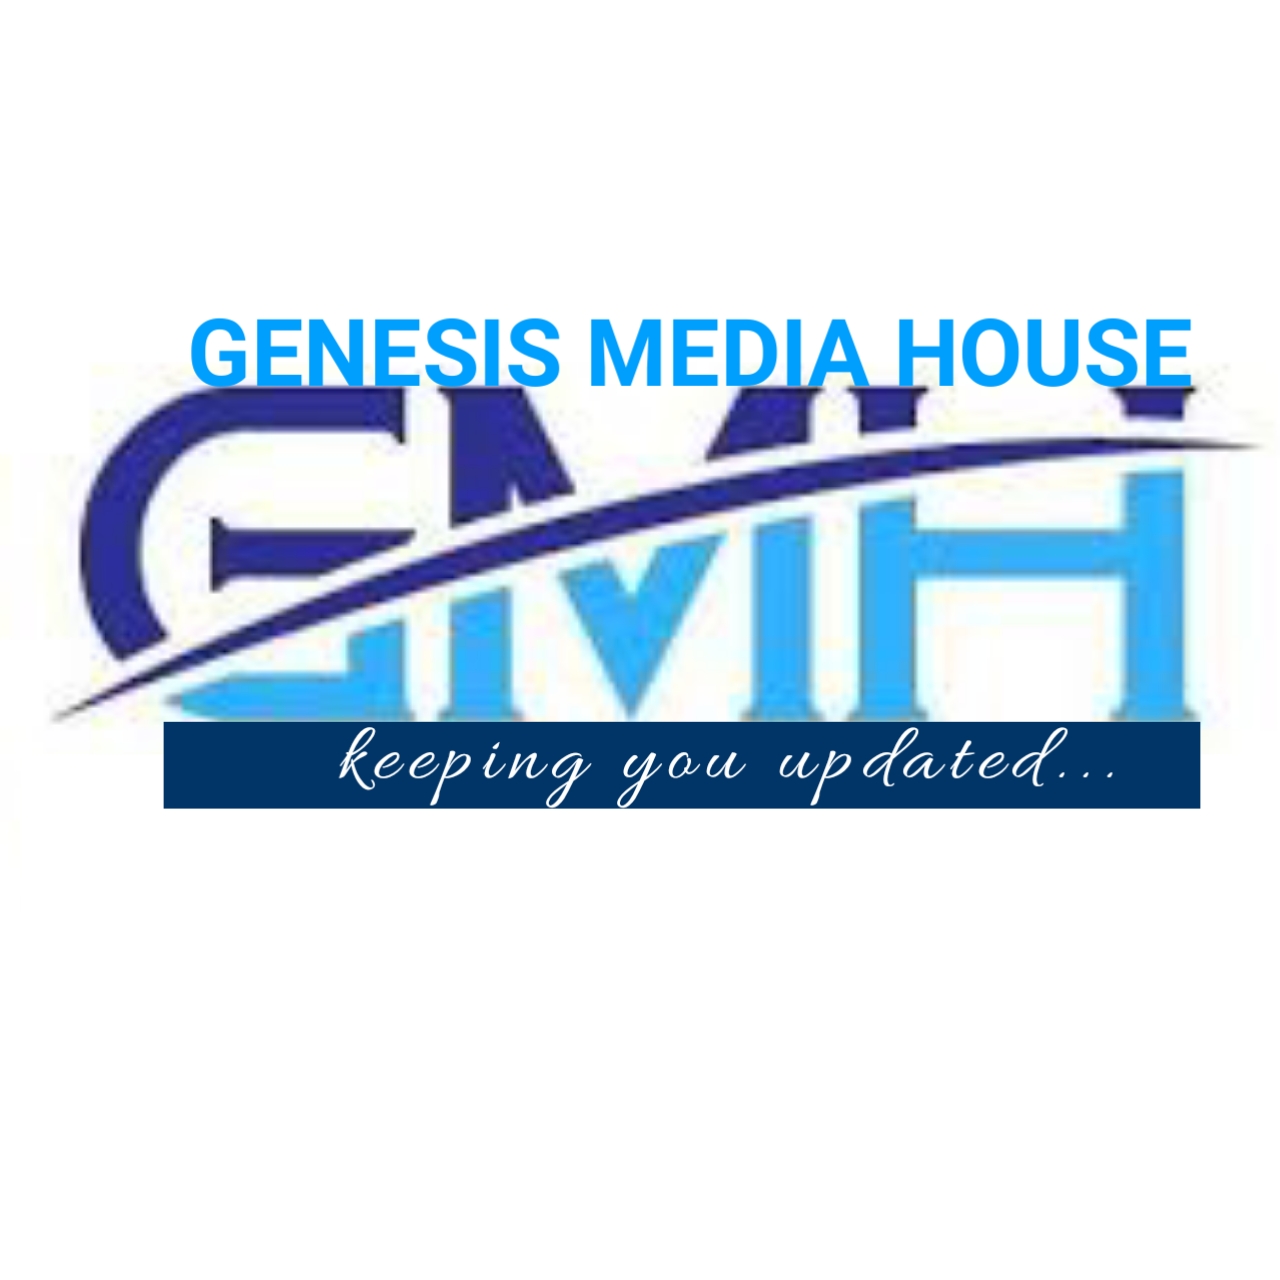 GENESIS MEDIA HOUSE